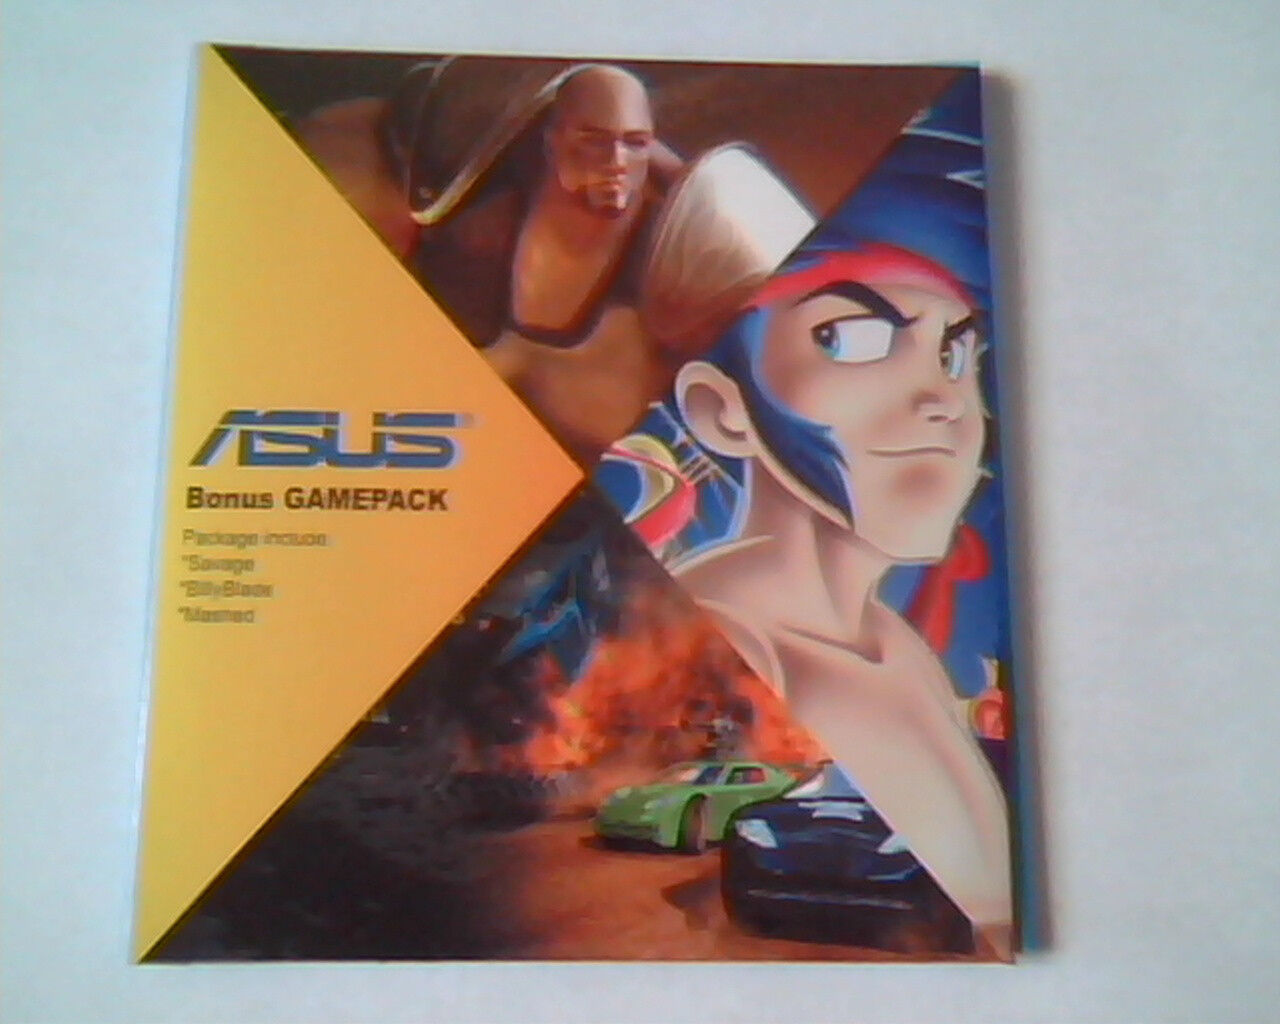 CD ASUS Bonus Gamepack Savage BillyBlade Mashed PC gaming - Set of 3